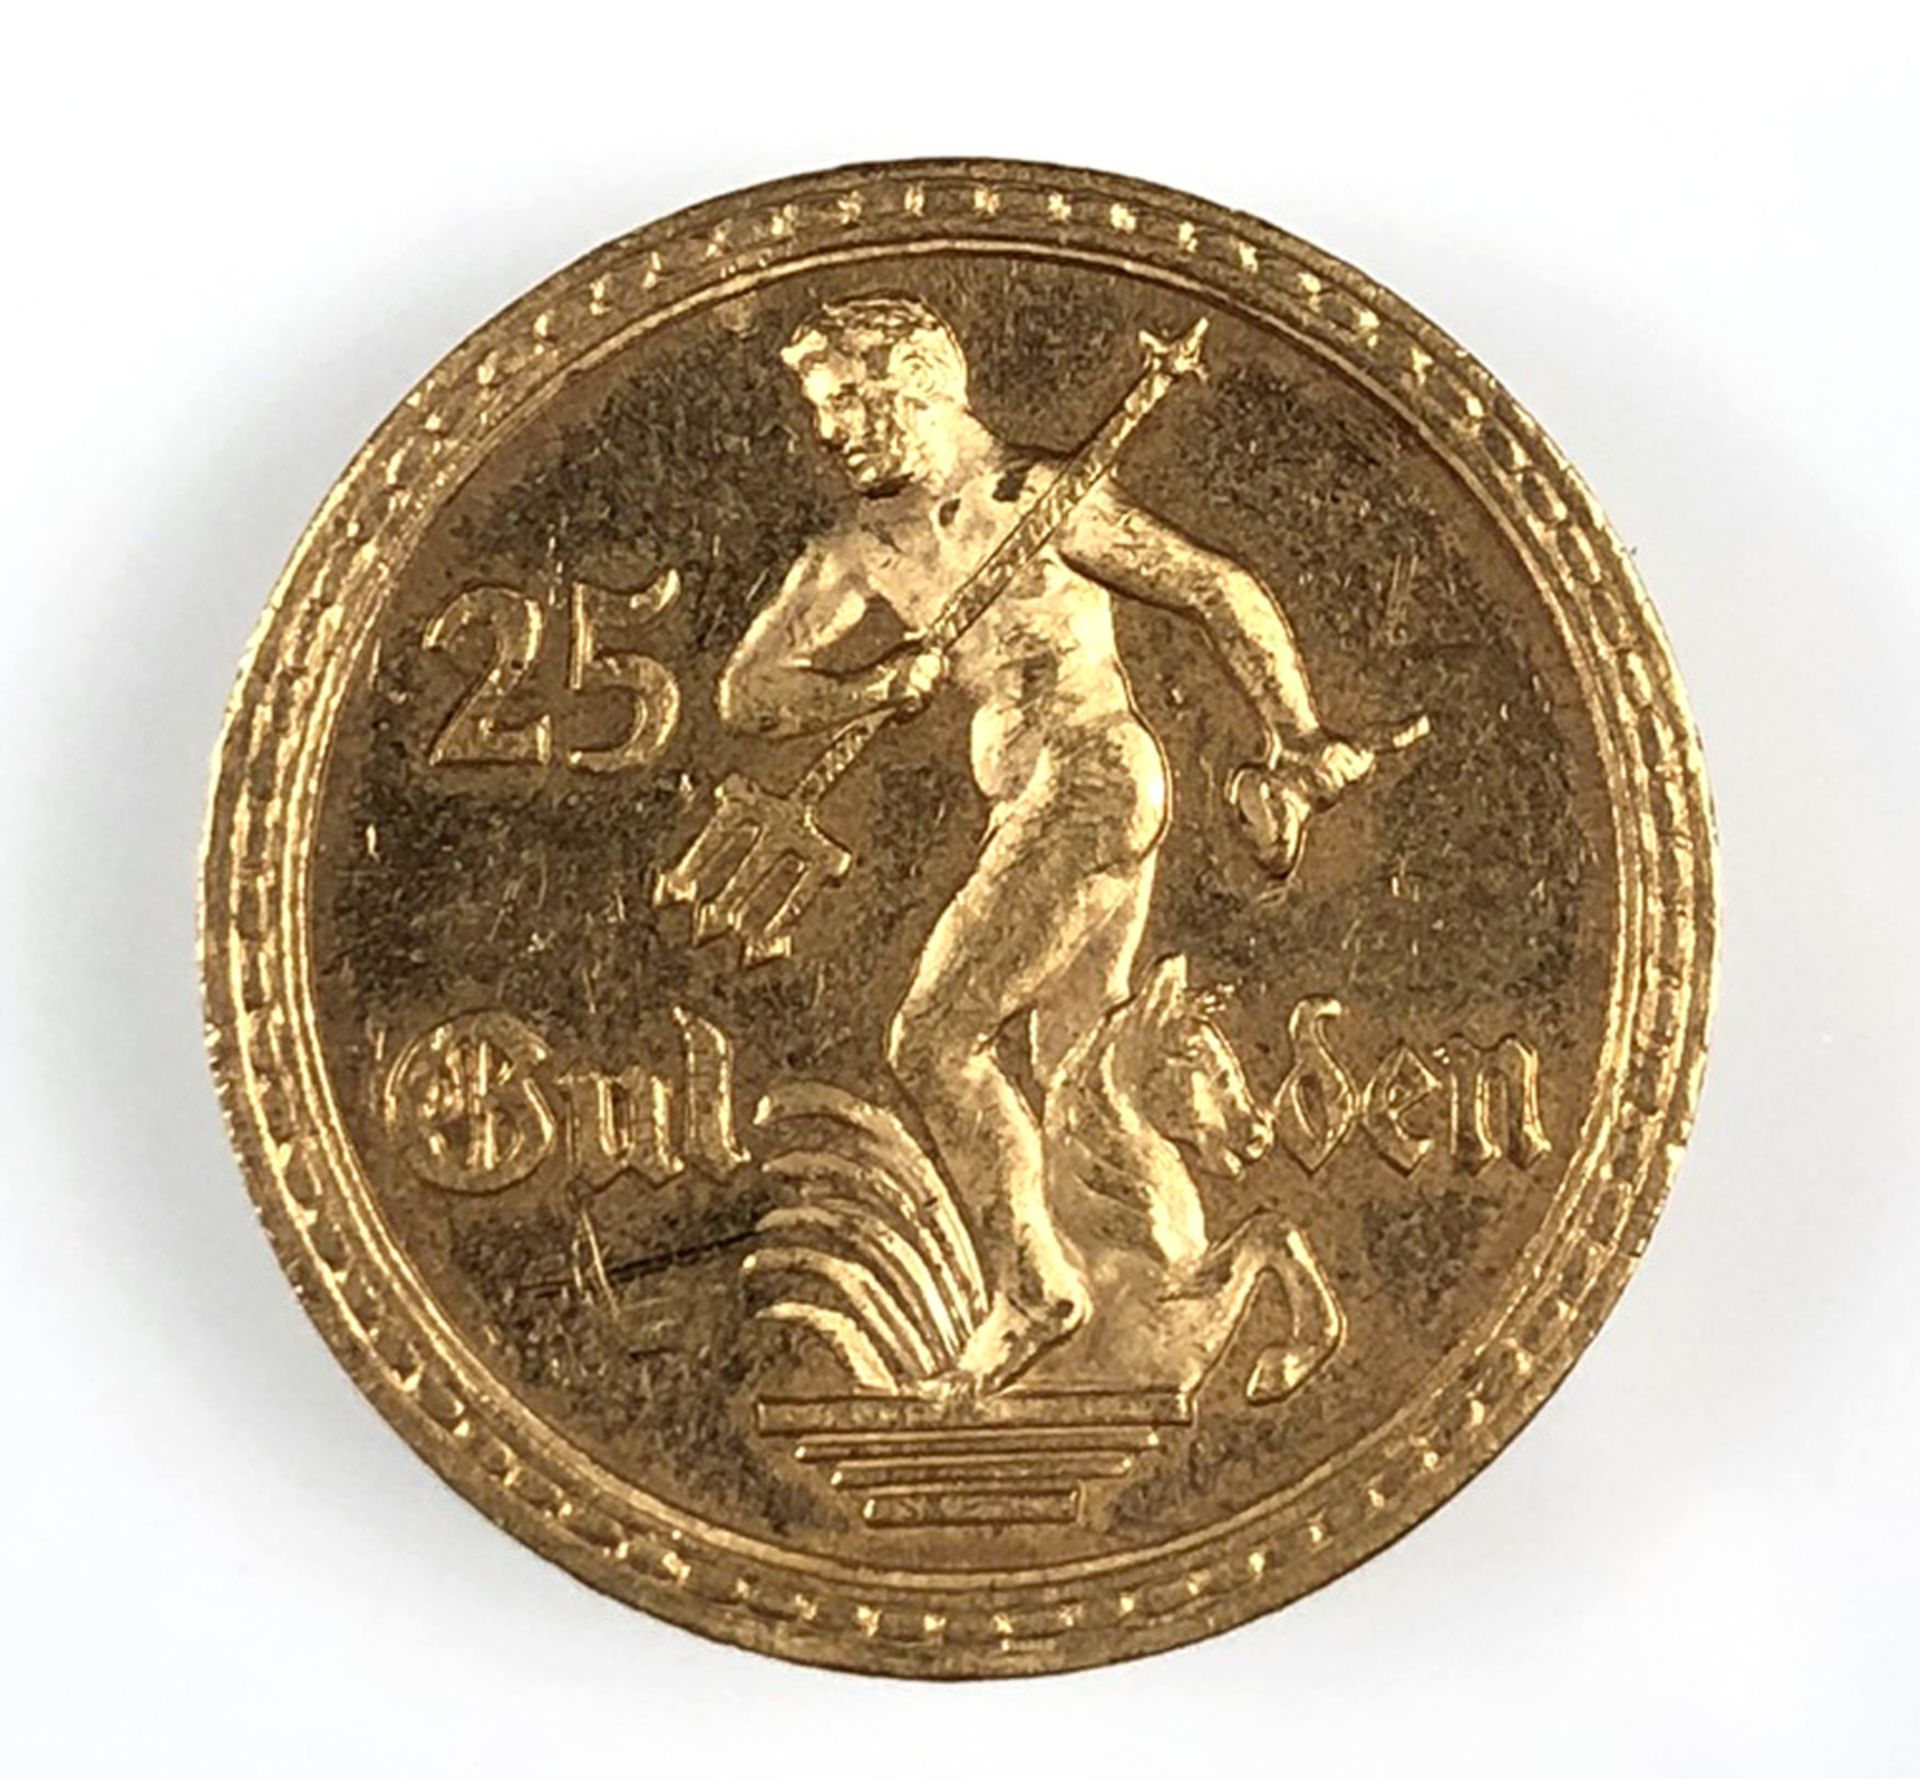 Danzig 25 Gulden 1930 Gold (J. D11).Auflage 4000 Exemplare. Wohl vorzüglicher Stempelglanz. 8 - Bild 4 aus 6